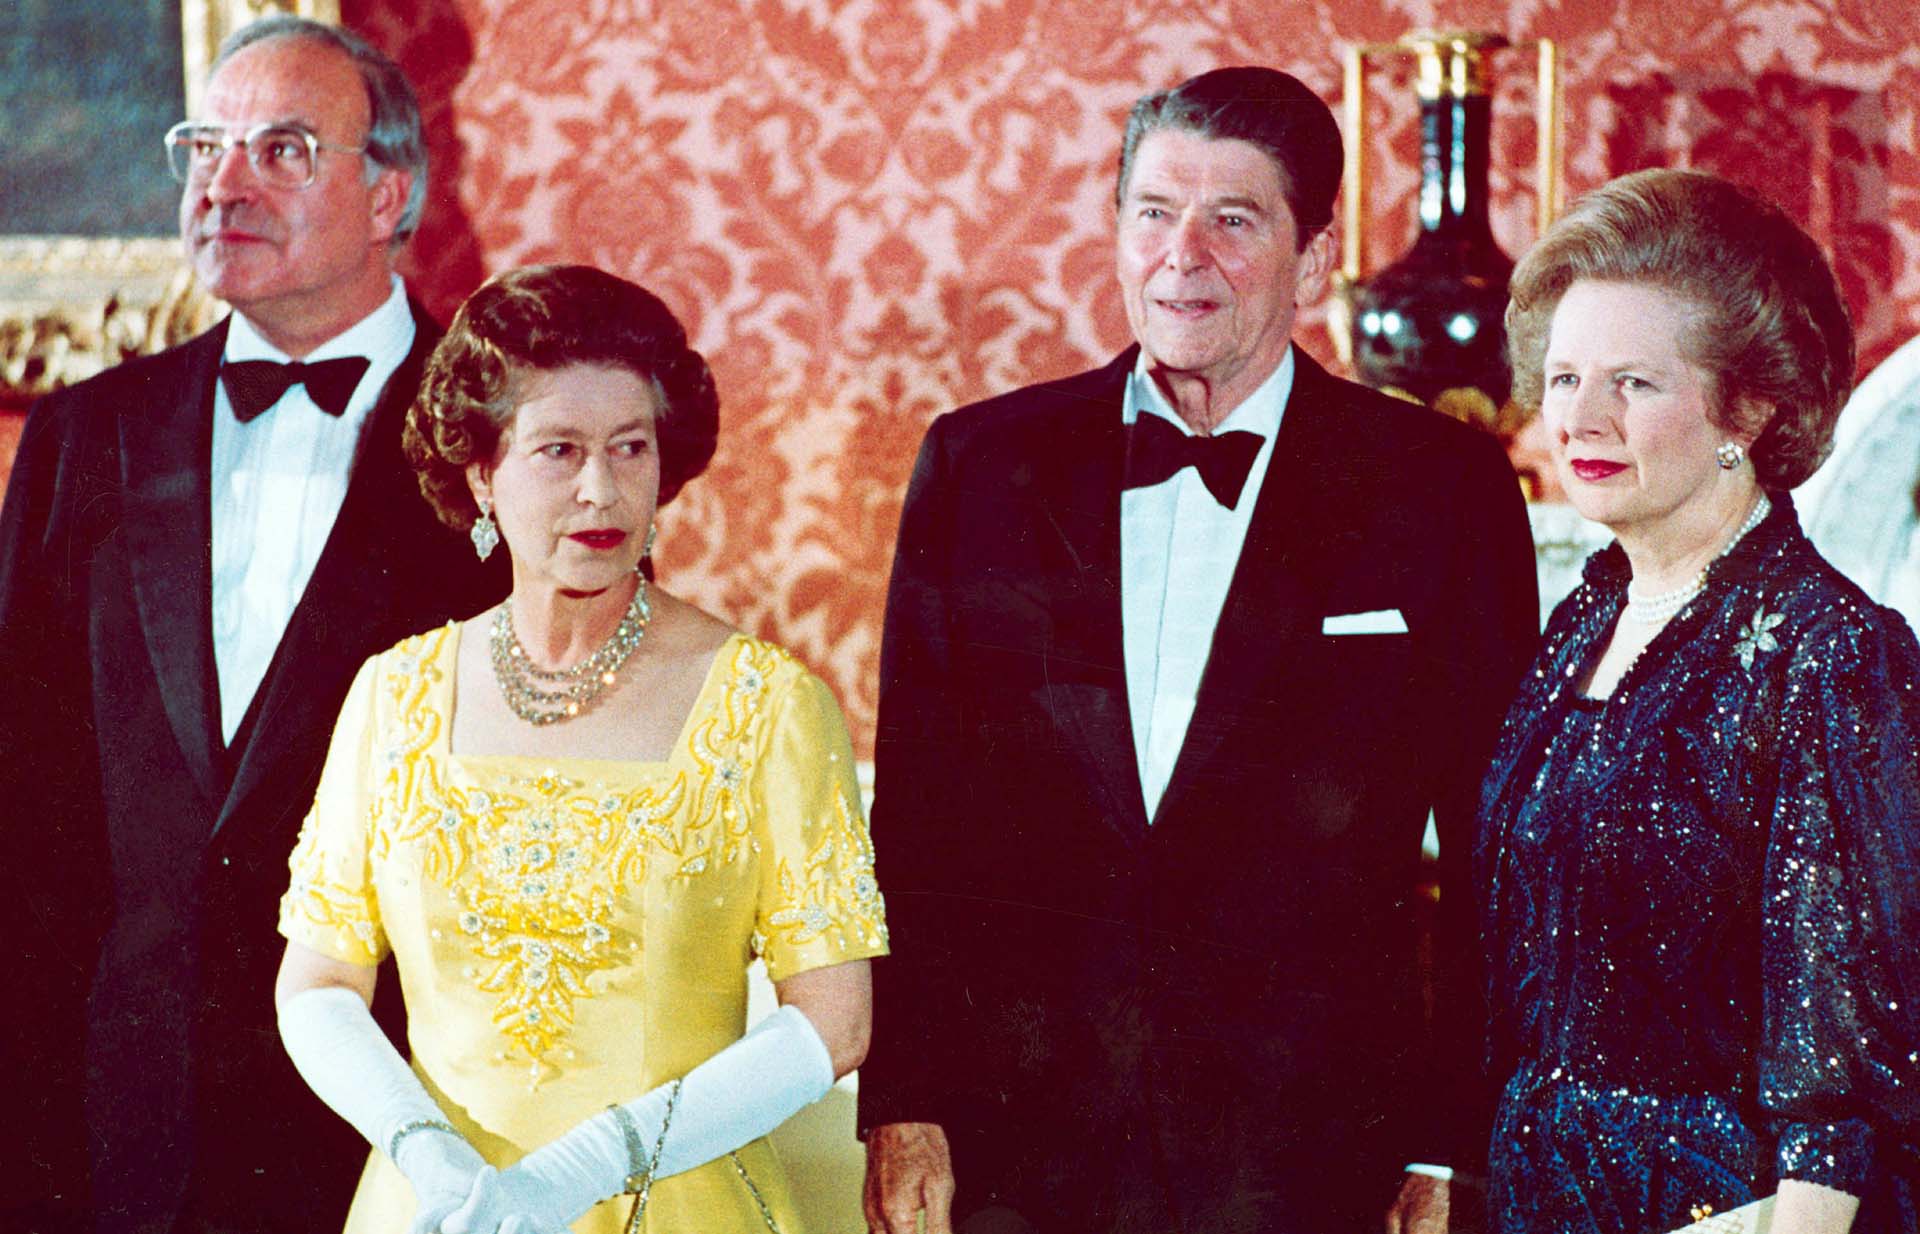 Junto al canciller alemán, Helmut Kohl; el presidente de los Estados Unidos, Ronald Reagan; y la Primera Ministra británica, Margaret Thatcher en el Palacio de Buckingham 